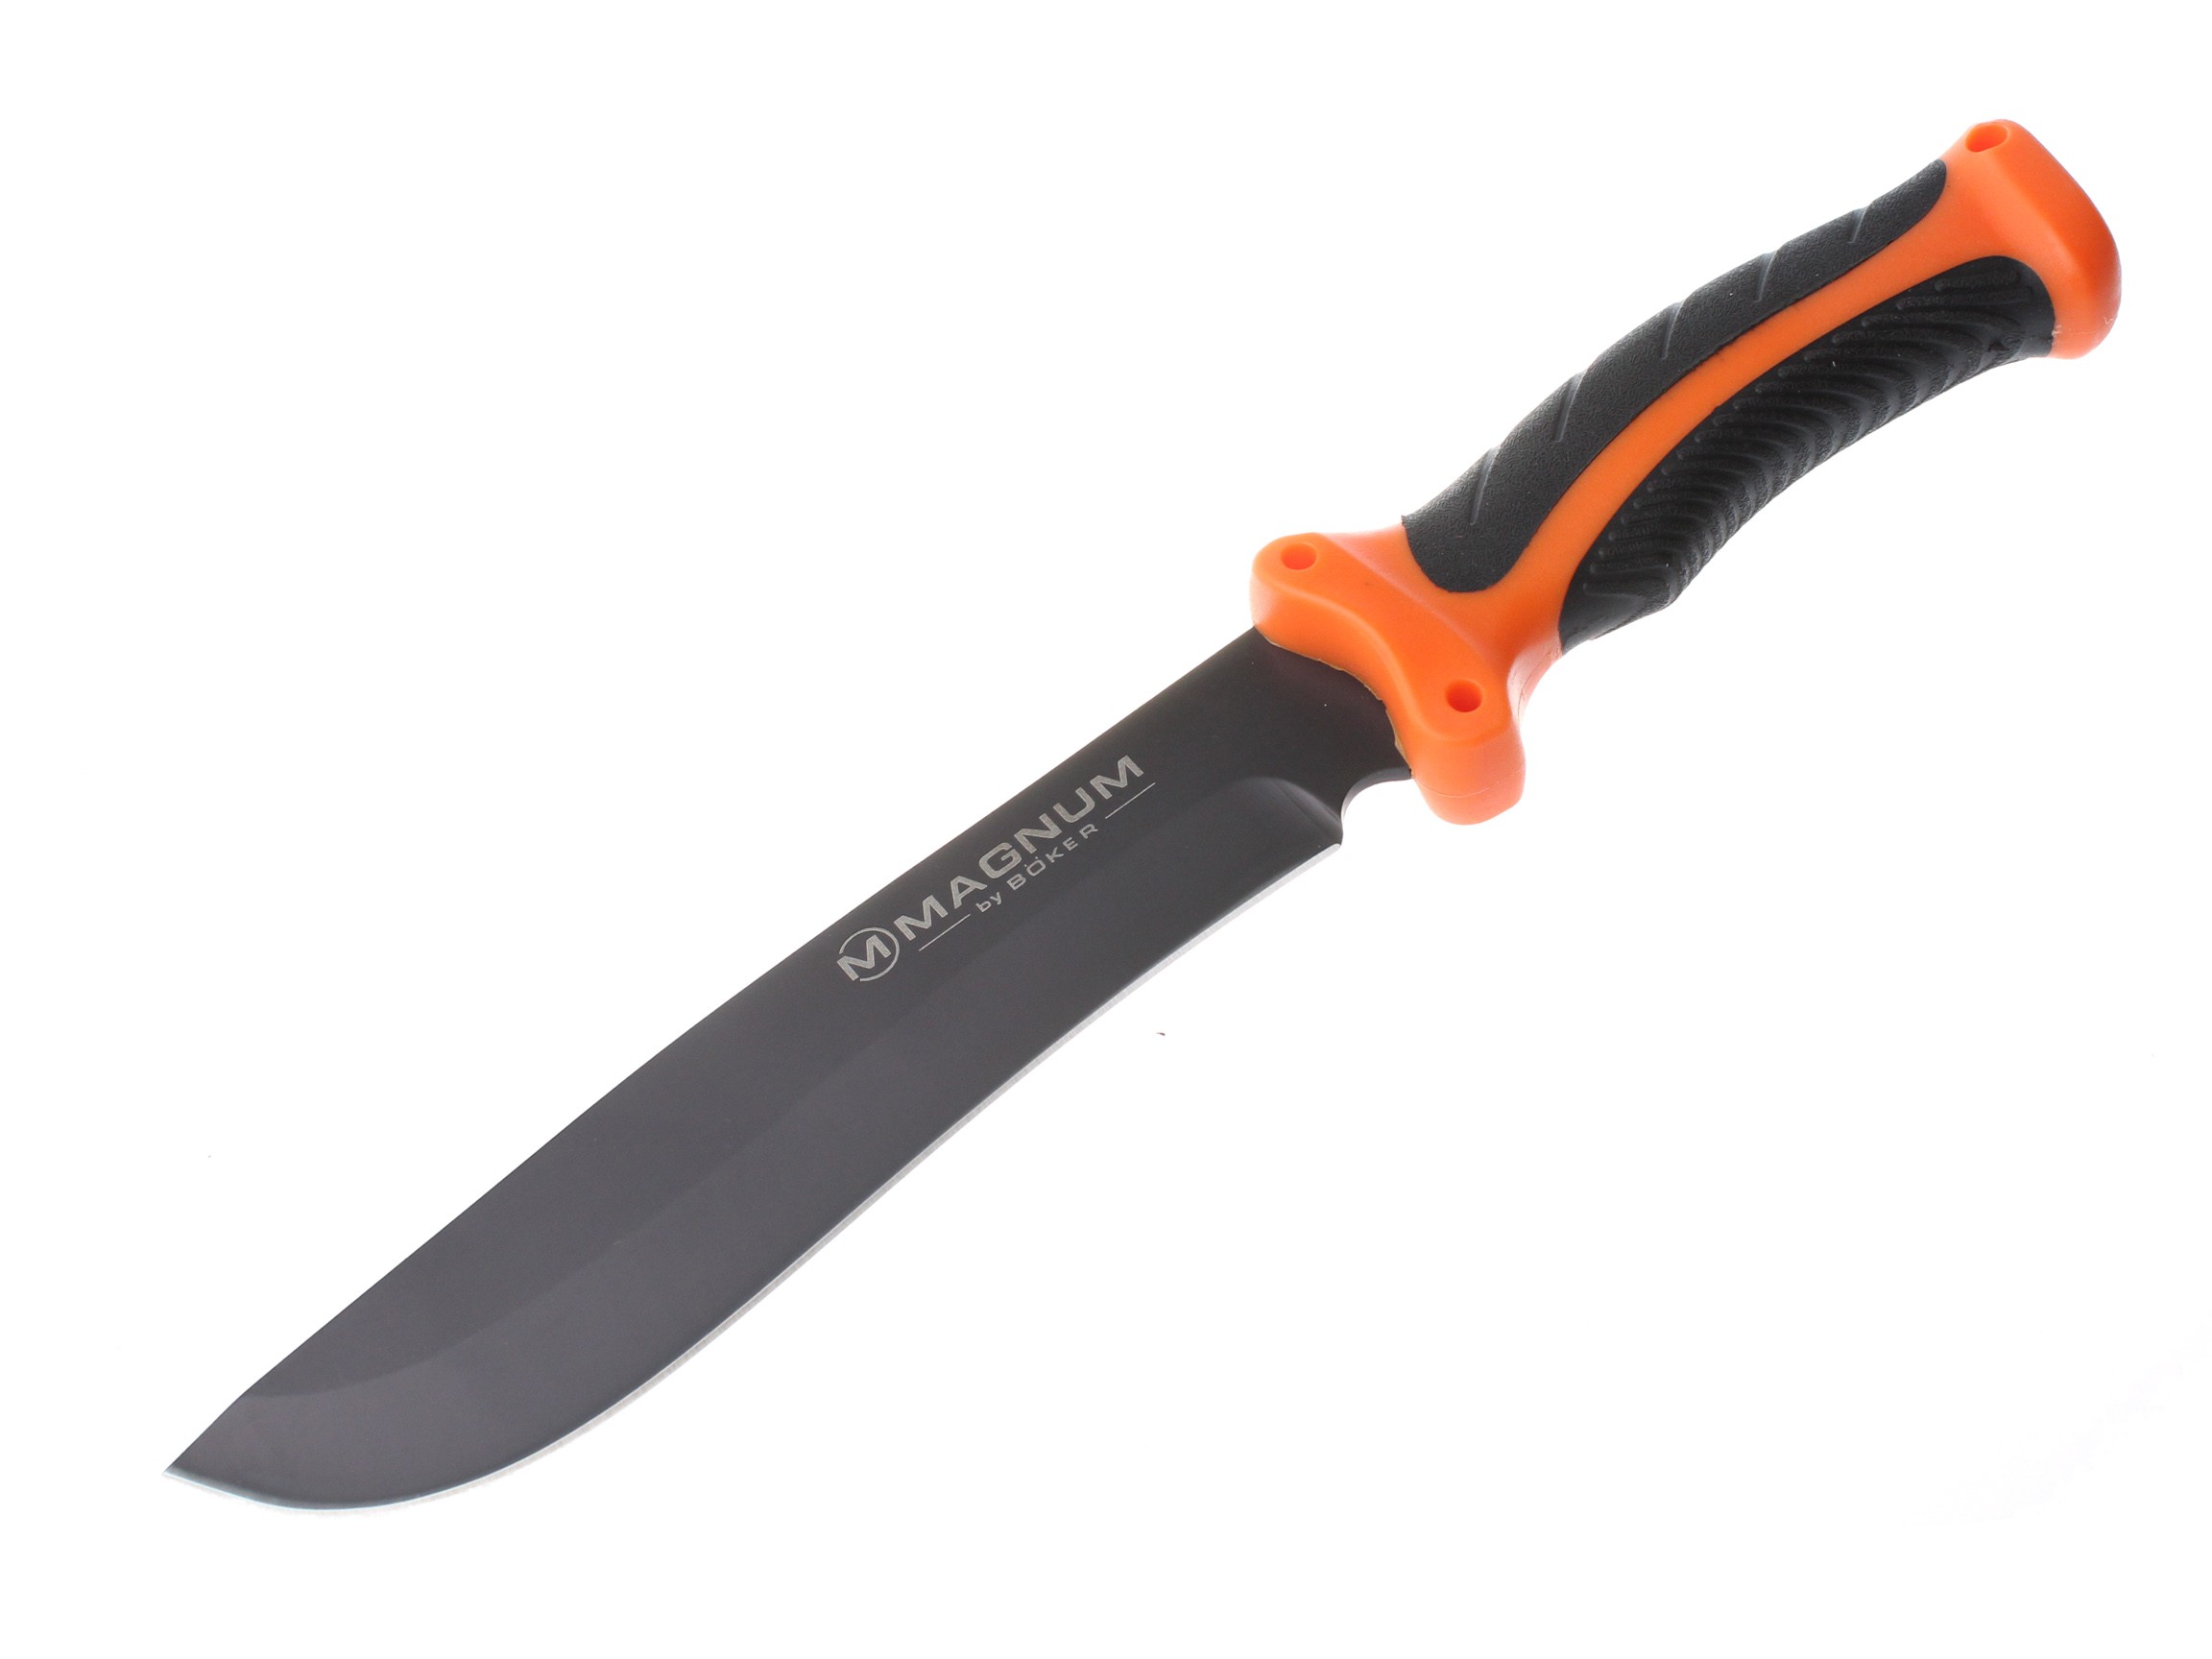 Нож Boker FFB фиксированный клинок 16,7см 440A - фото 1